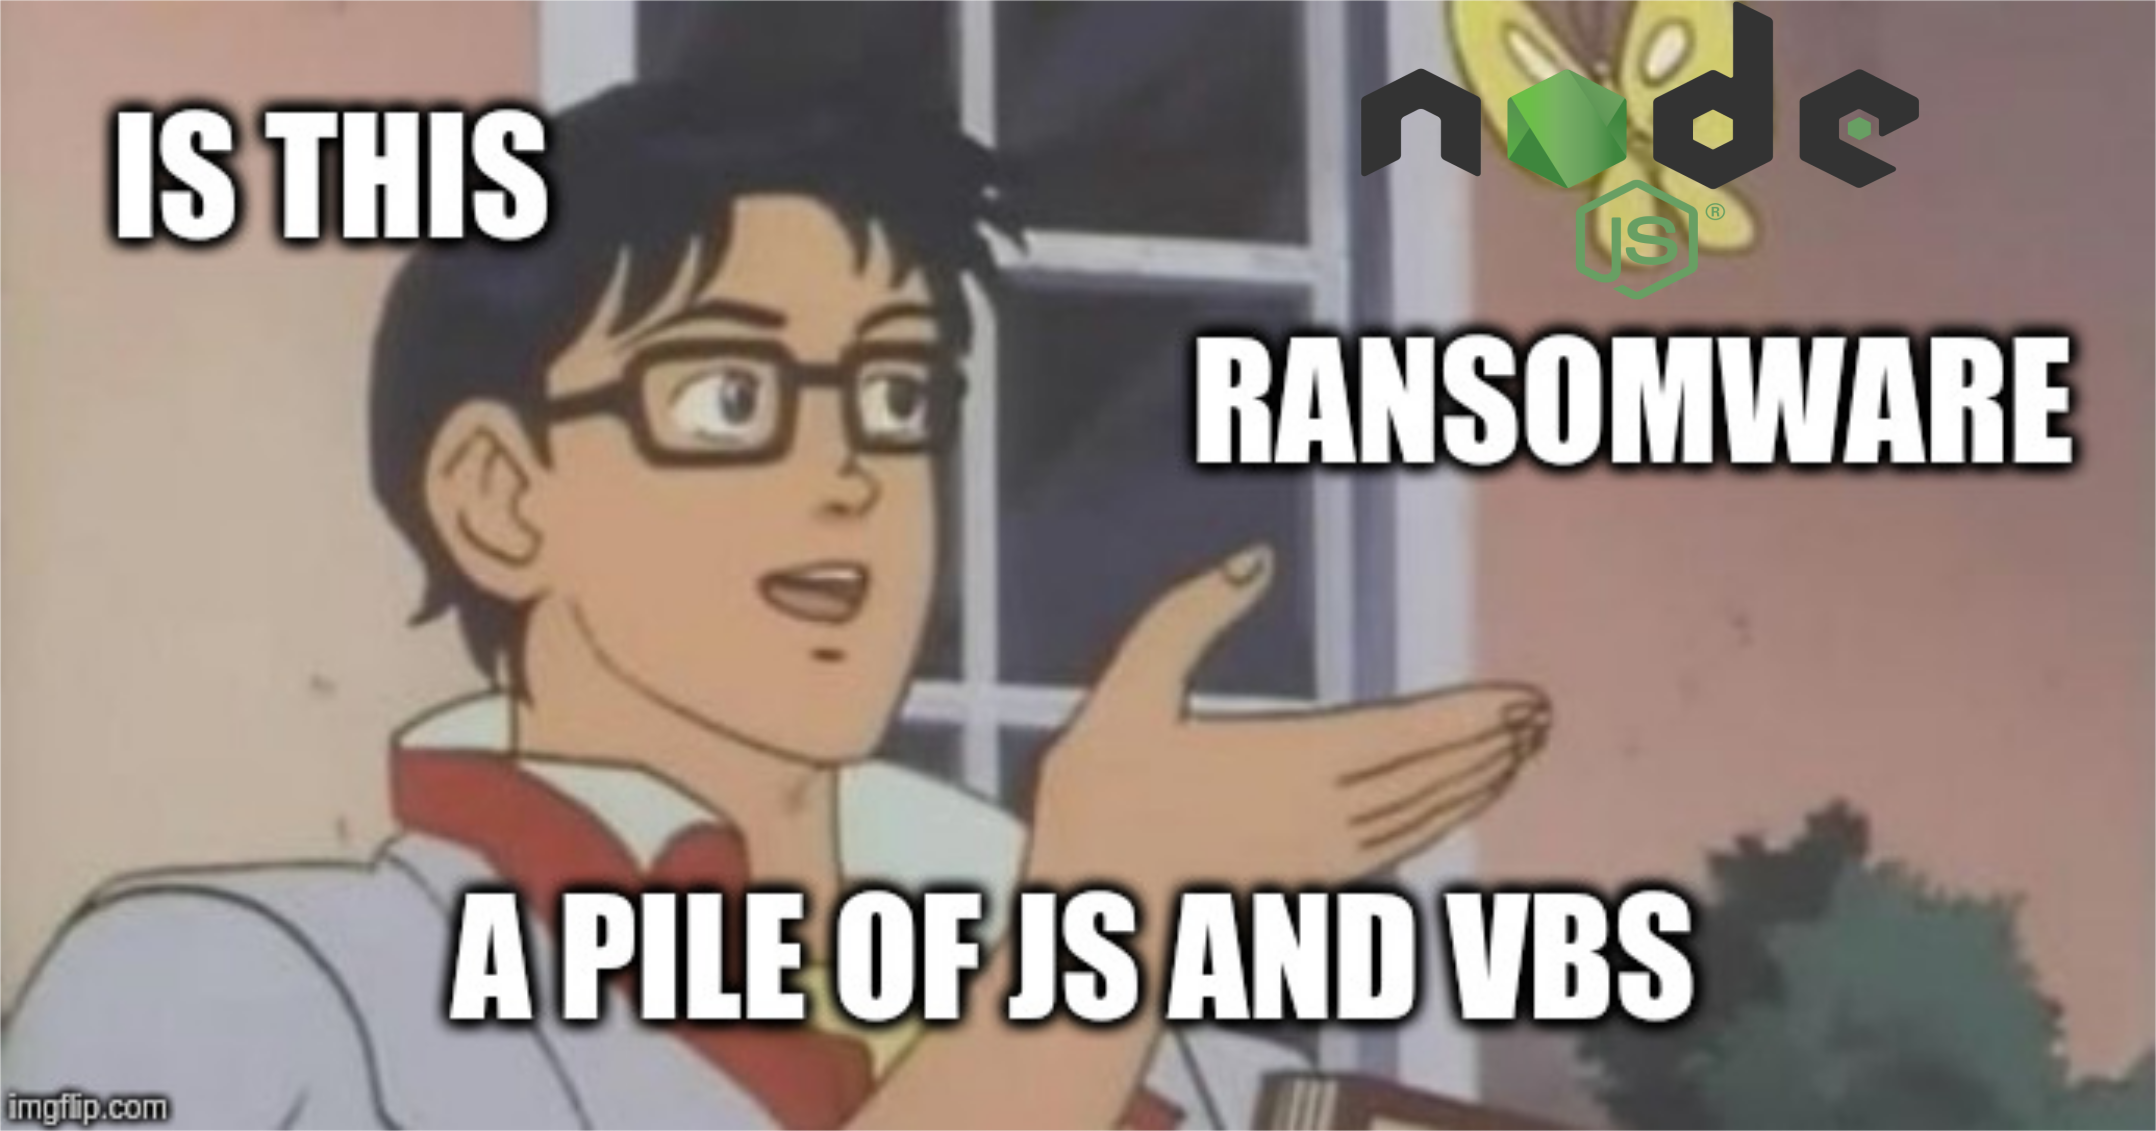 The Opposite of Fileless Malware - NodeJS Ransomware